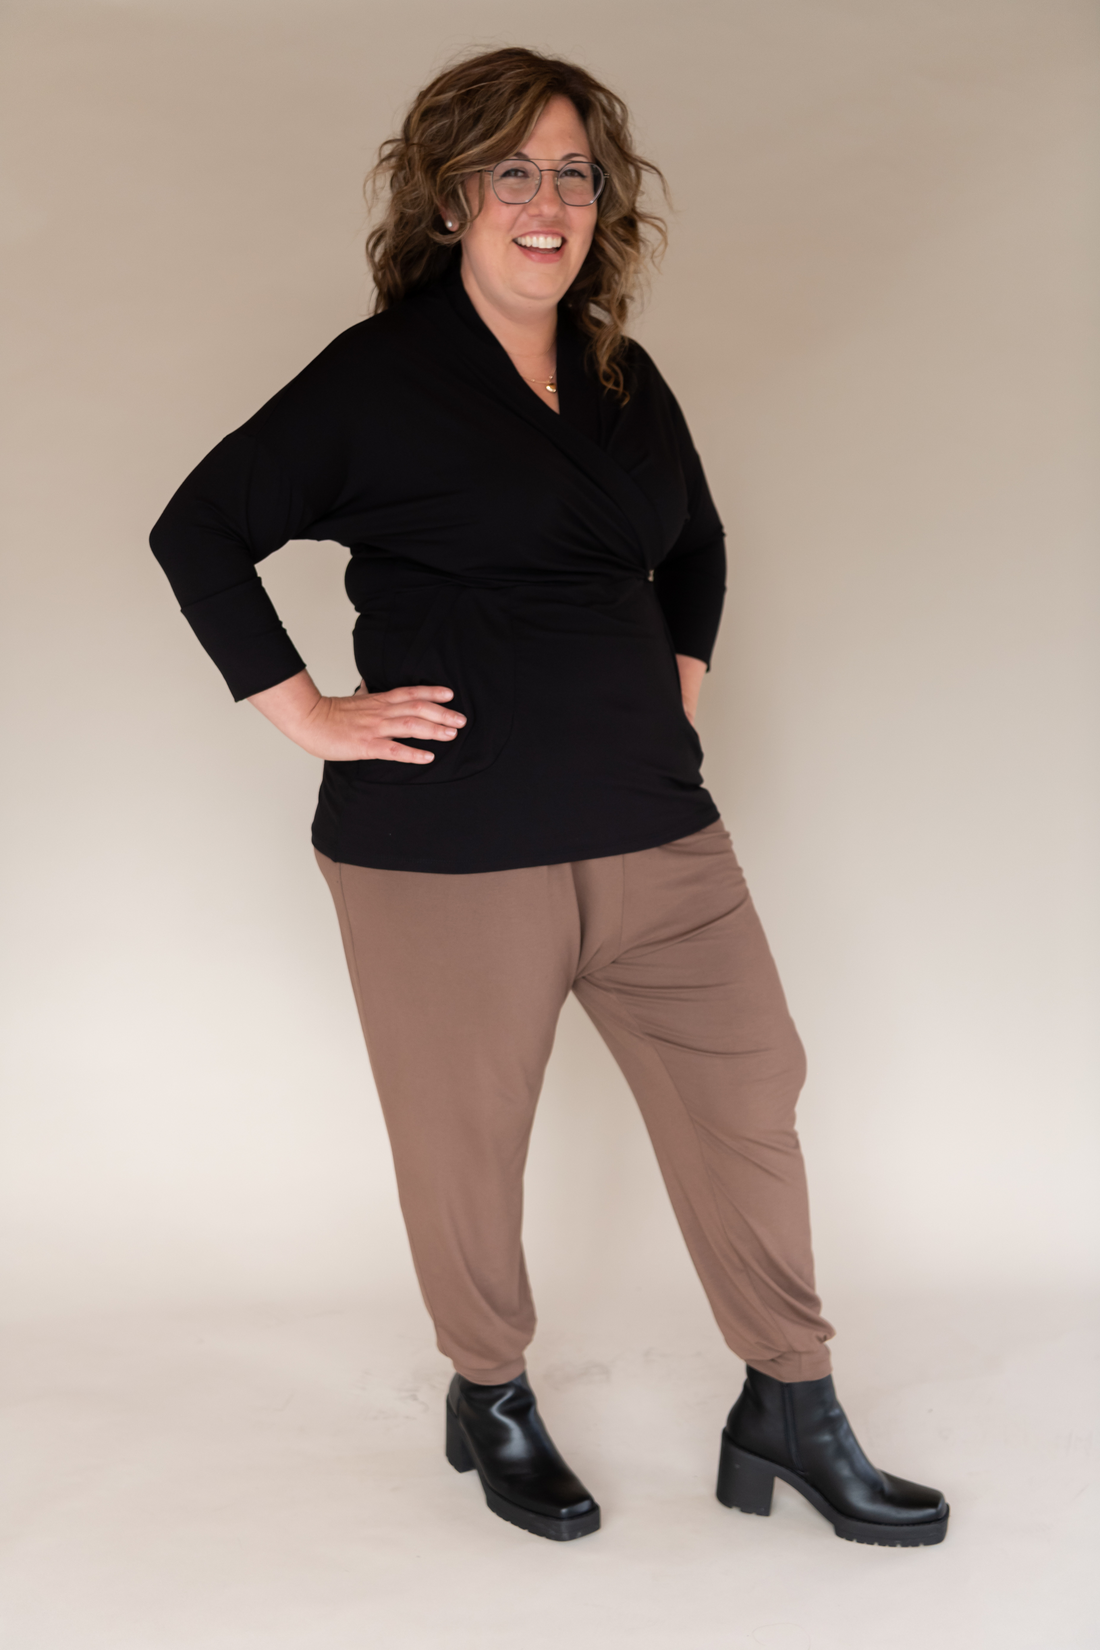 Pantalon ample avec poches sarouel brun beige muscade pour femmes fabriqué au Québec.